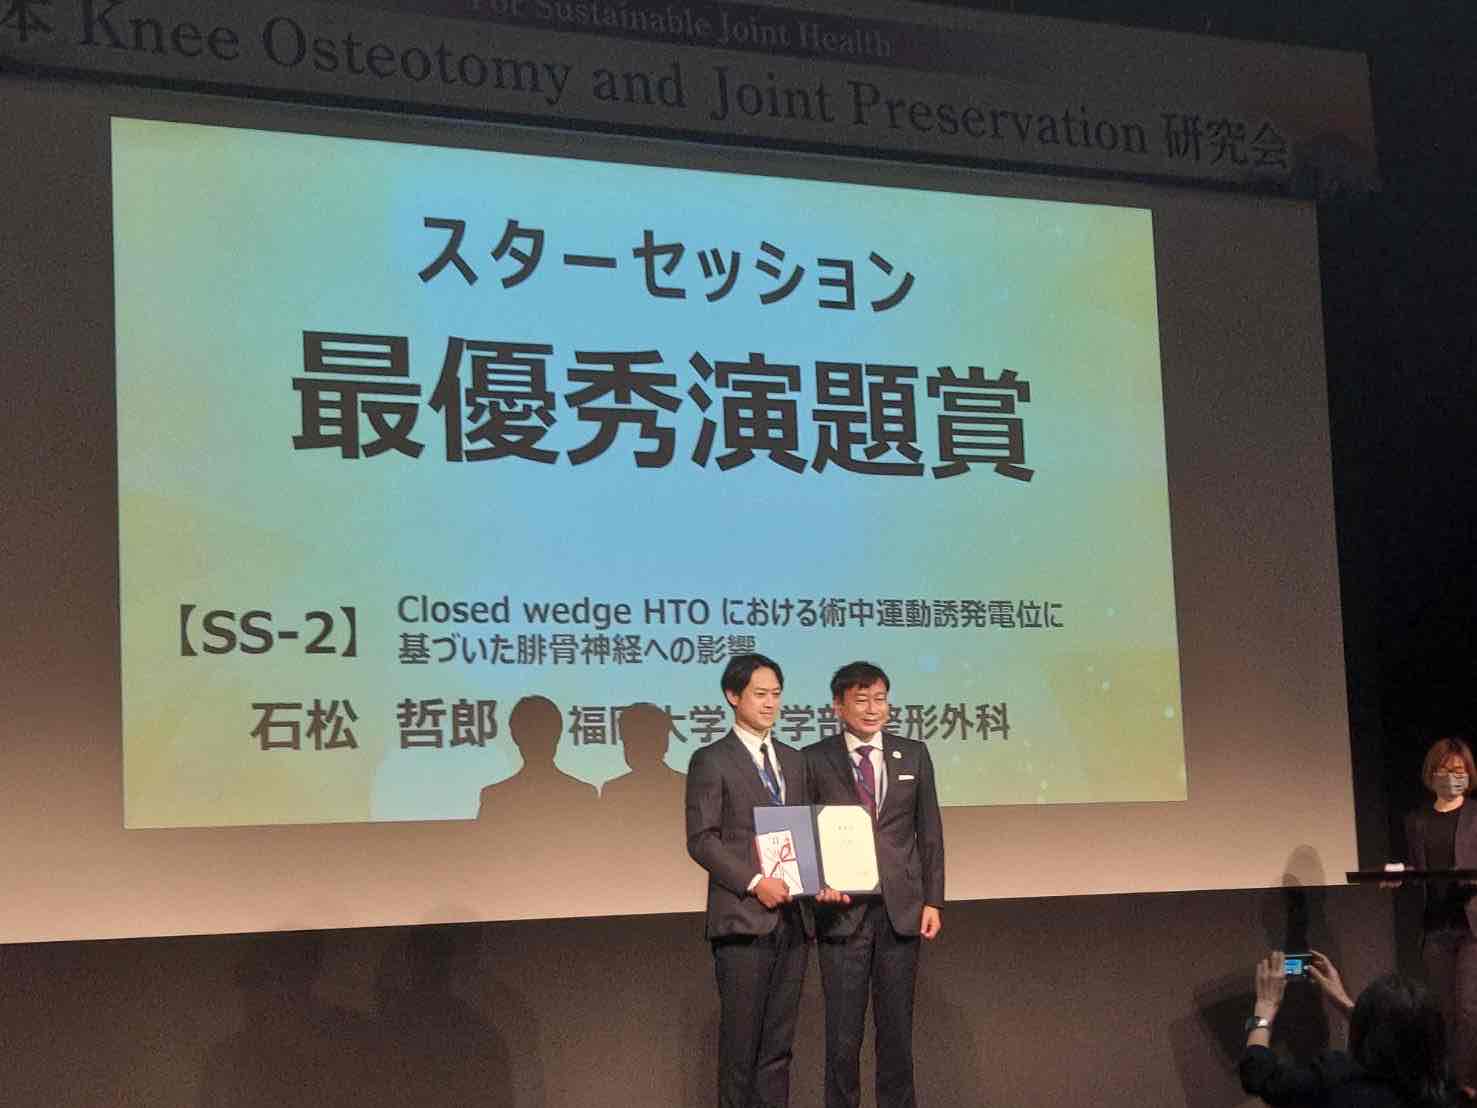 石松哲郎先生、第2回Knee Osteotomy and Joint Preservation研究会最優秀演題賞のお知らせ